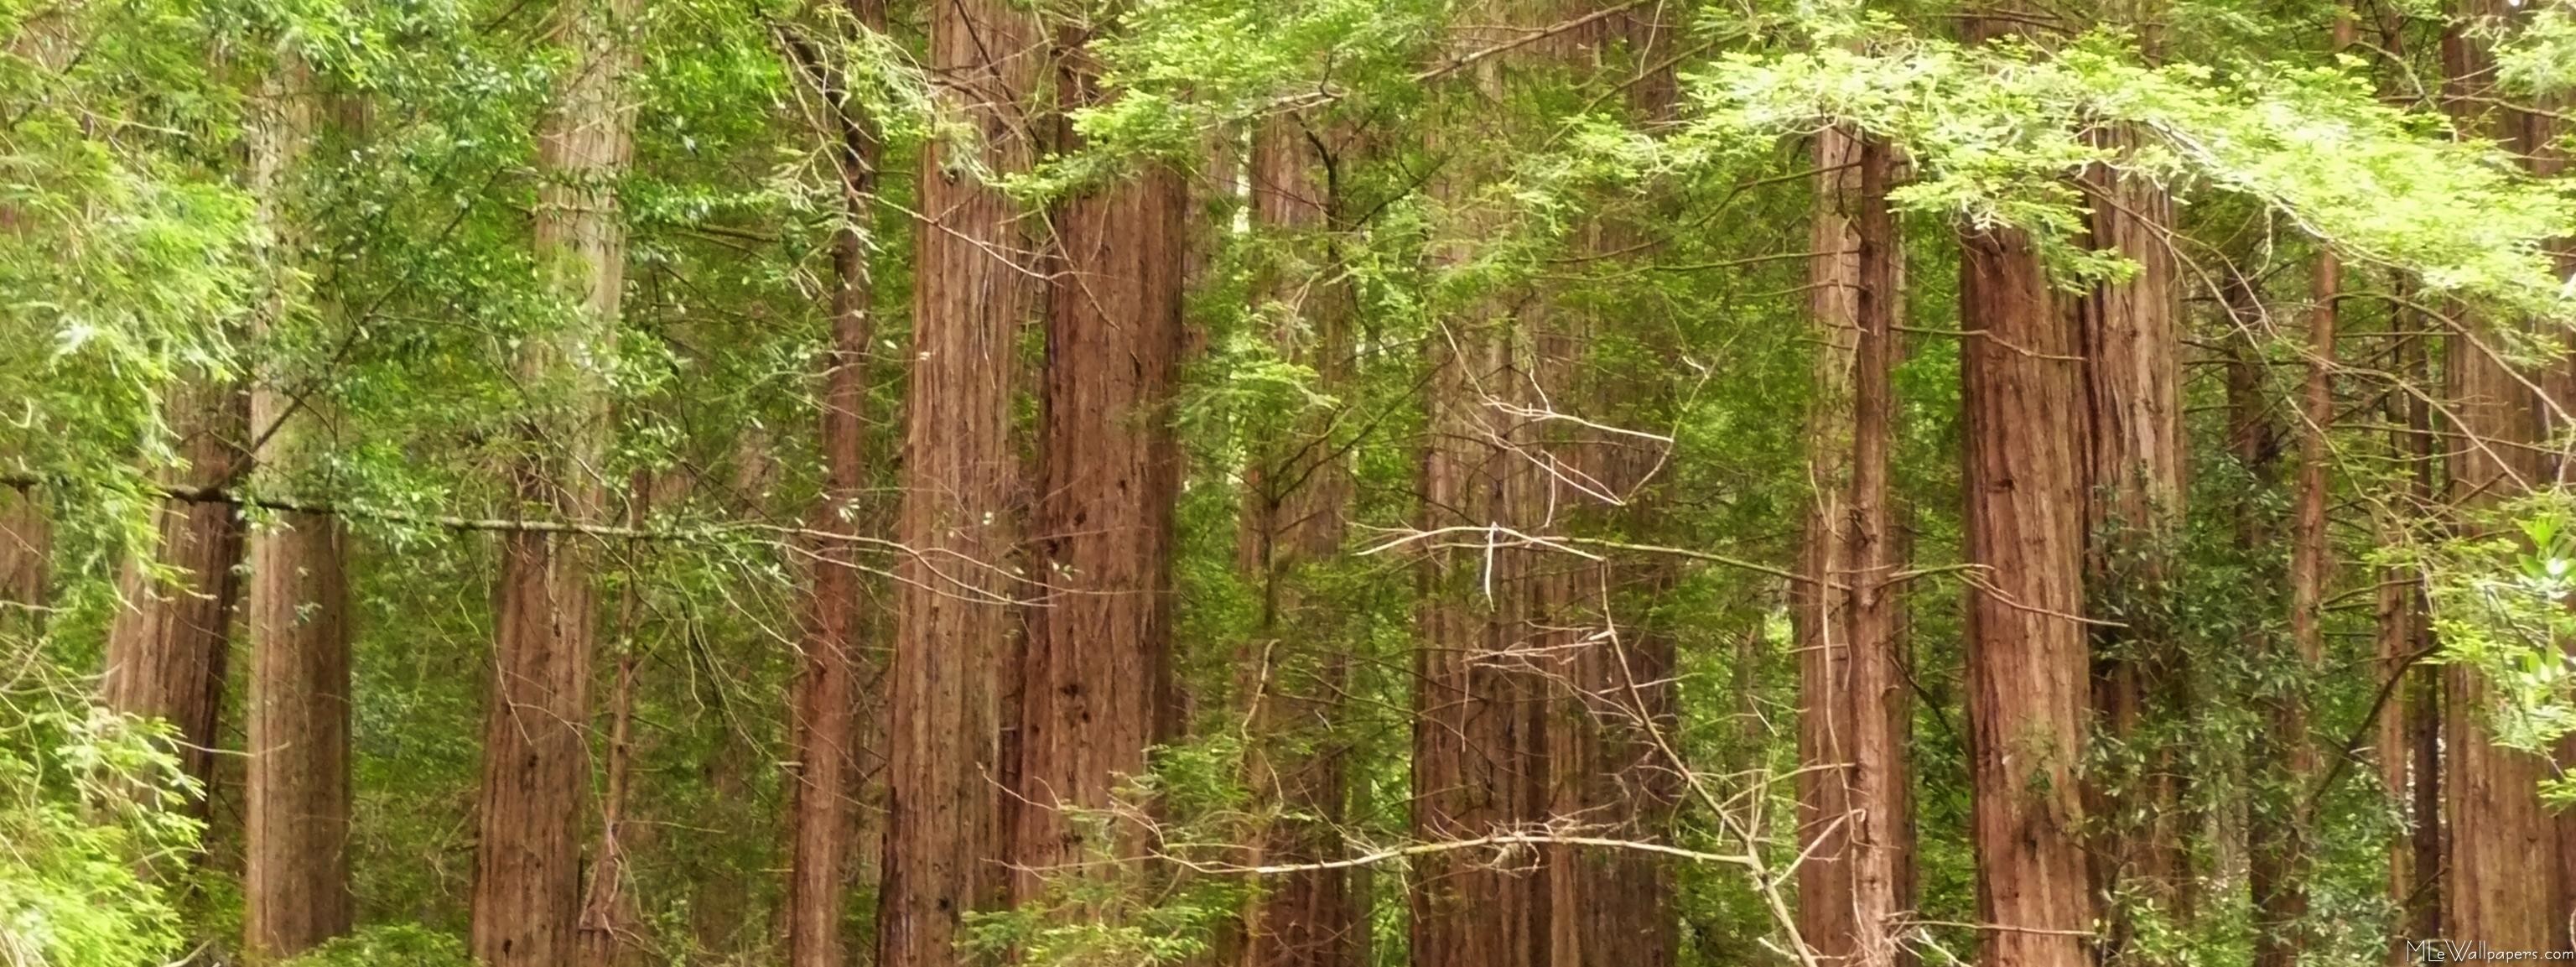 3072x1153 Redwood Trees